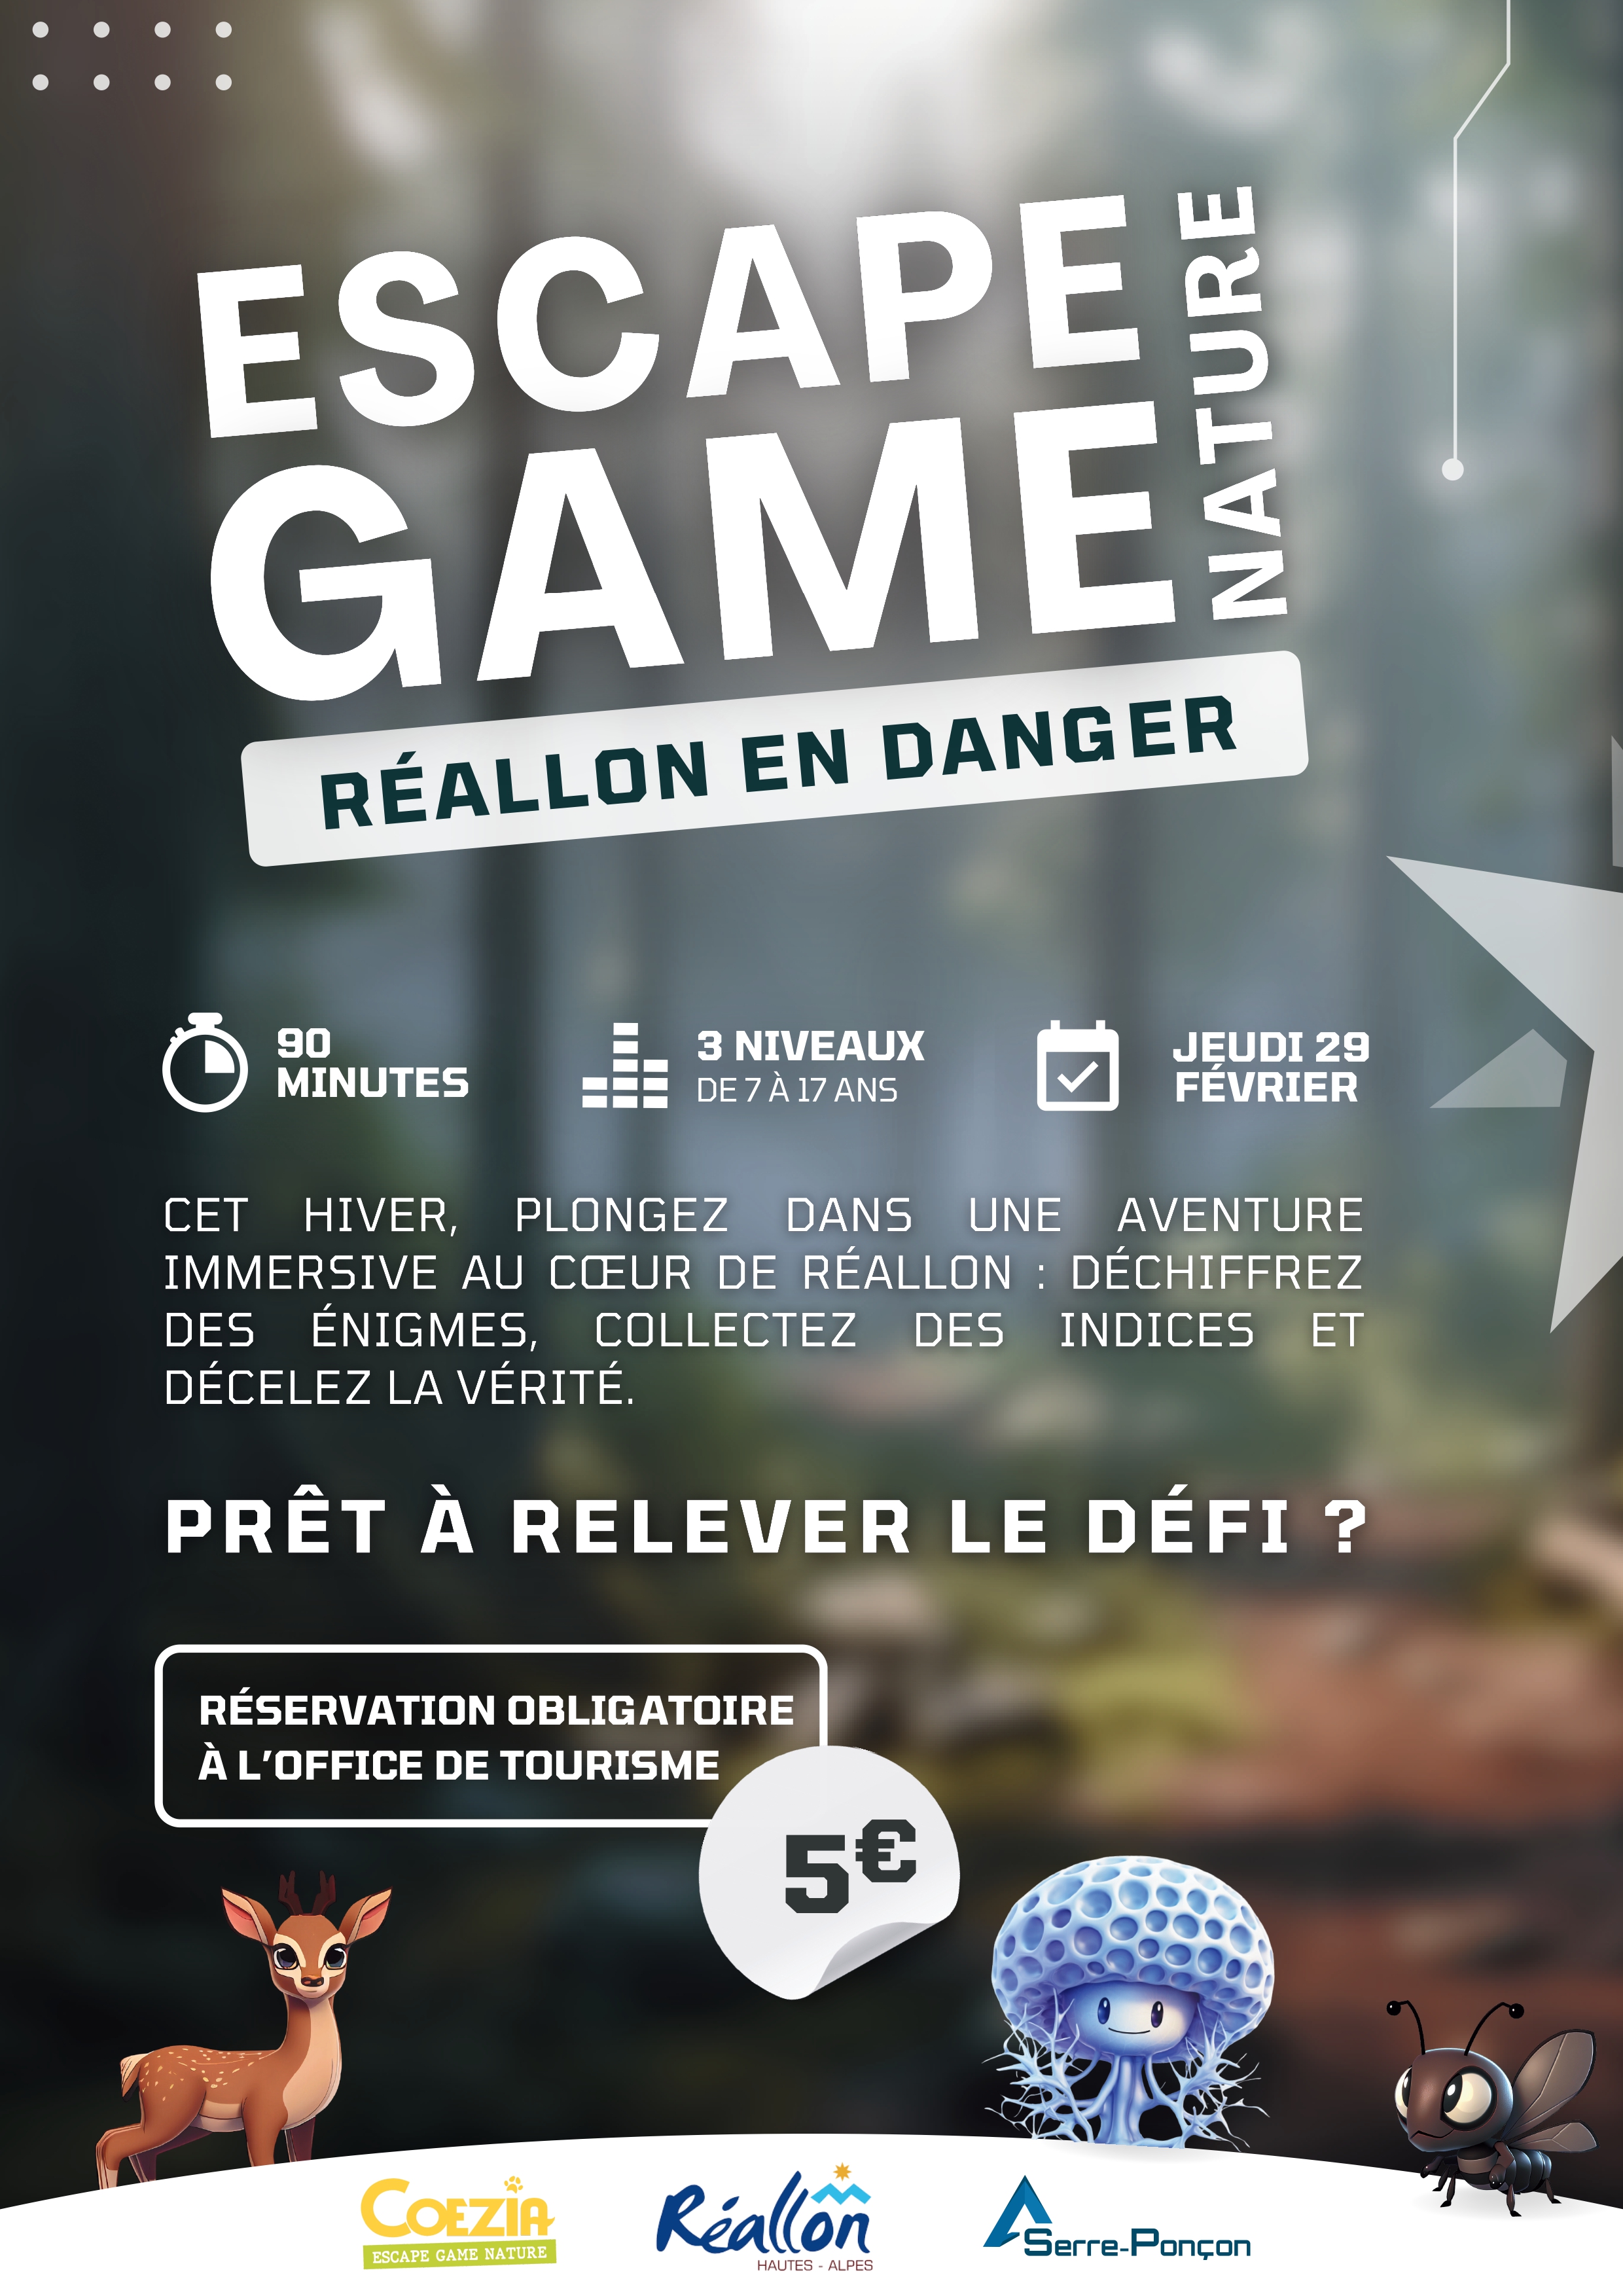 Escape Game Nature - Réallon en Danger